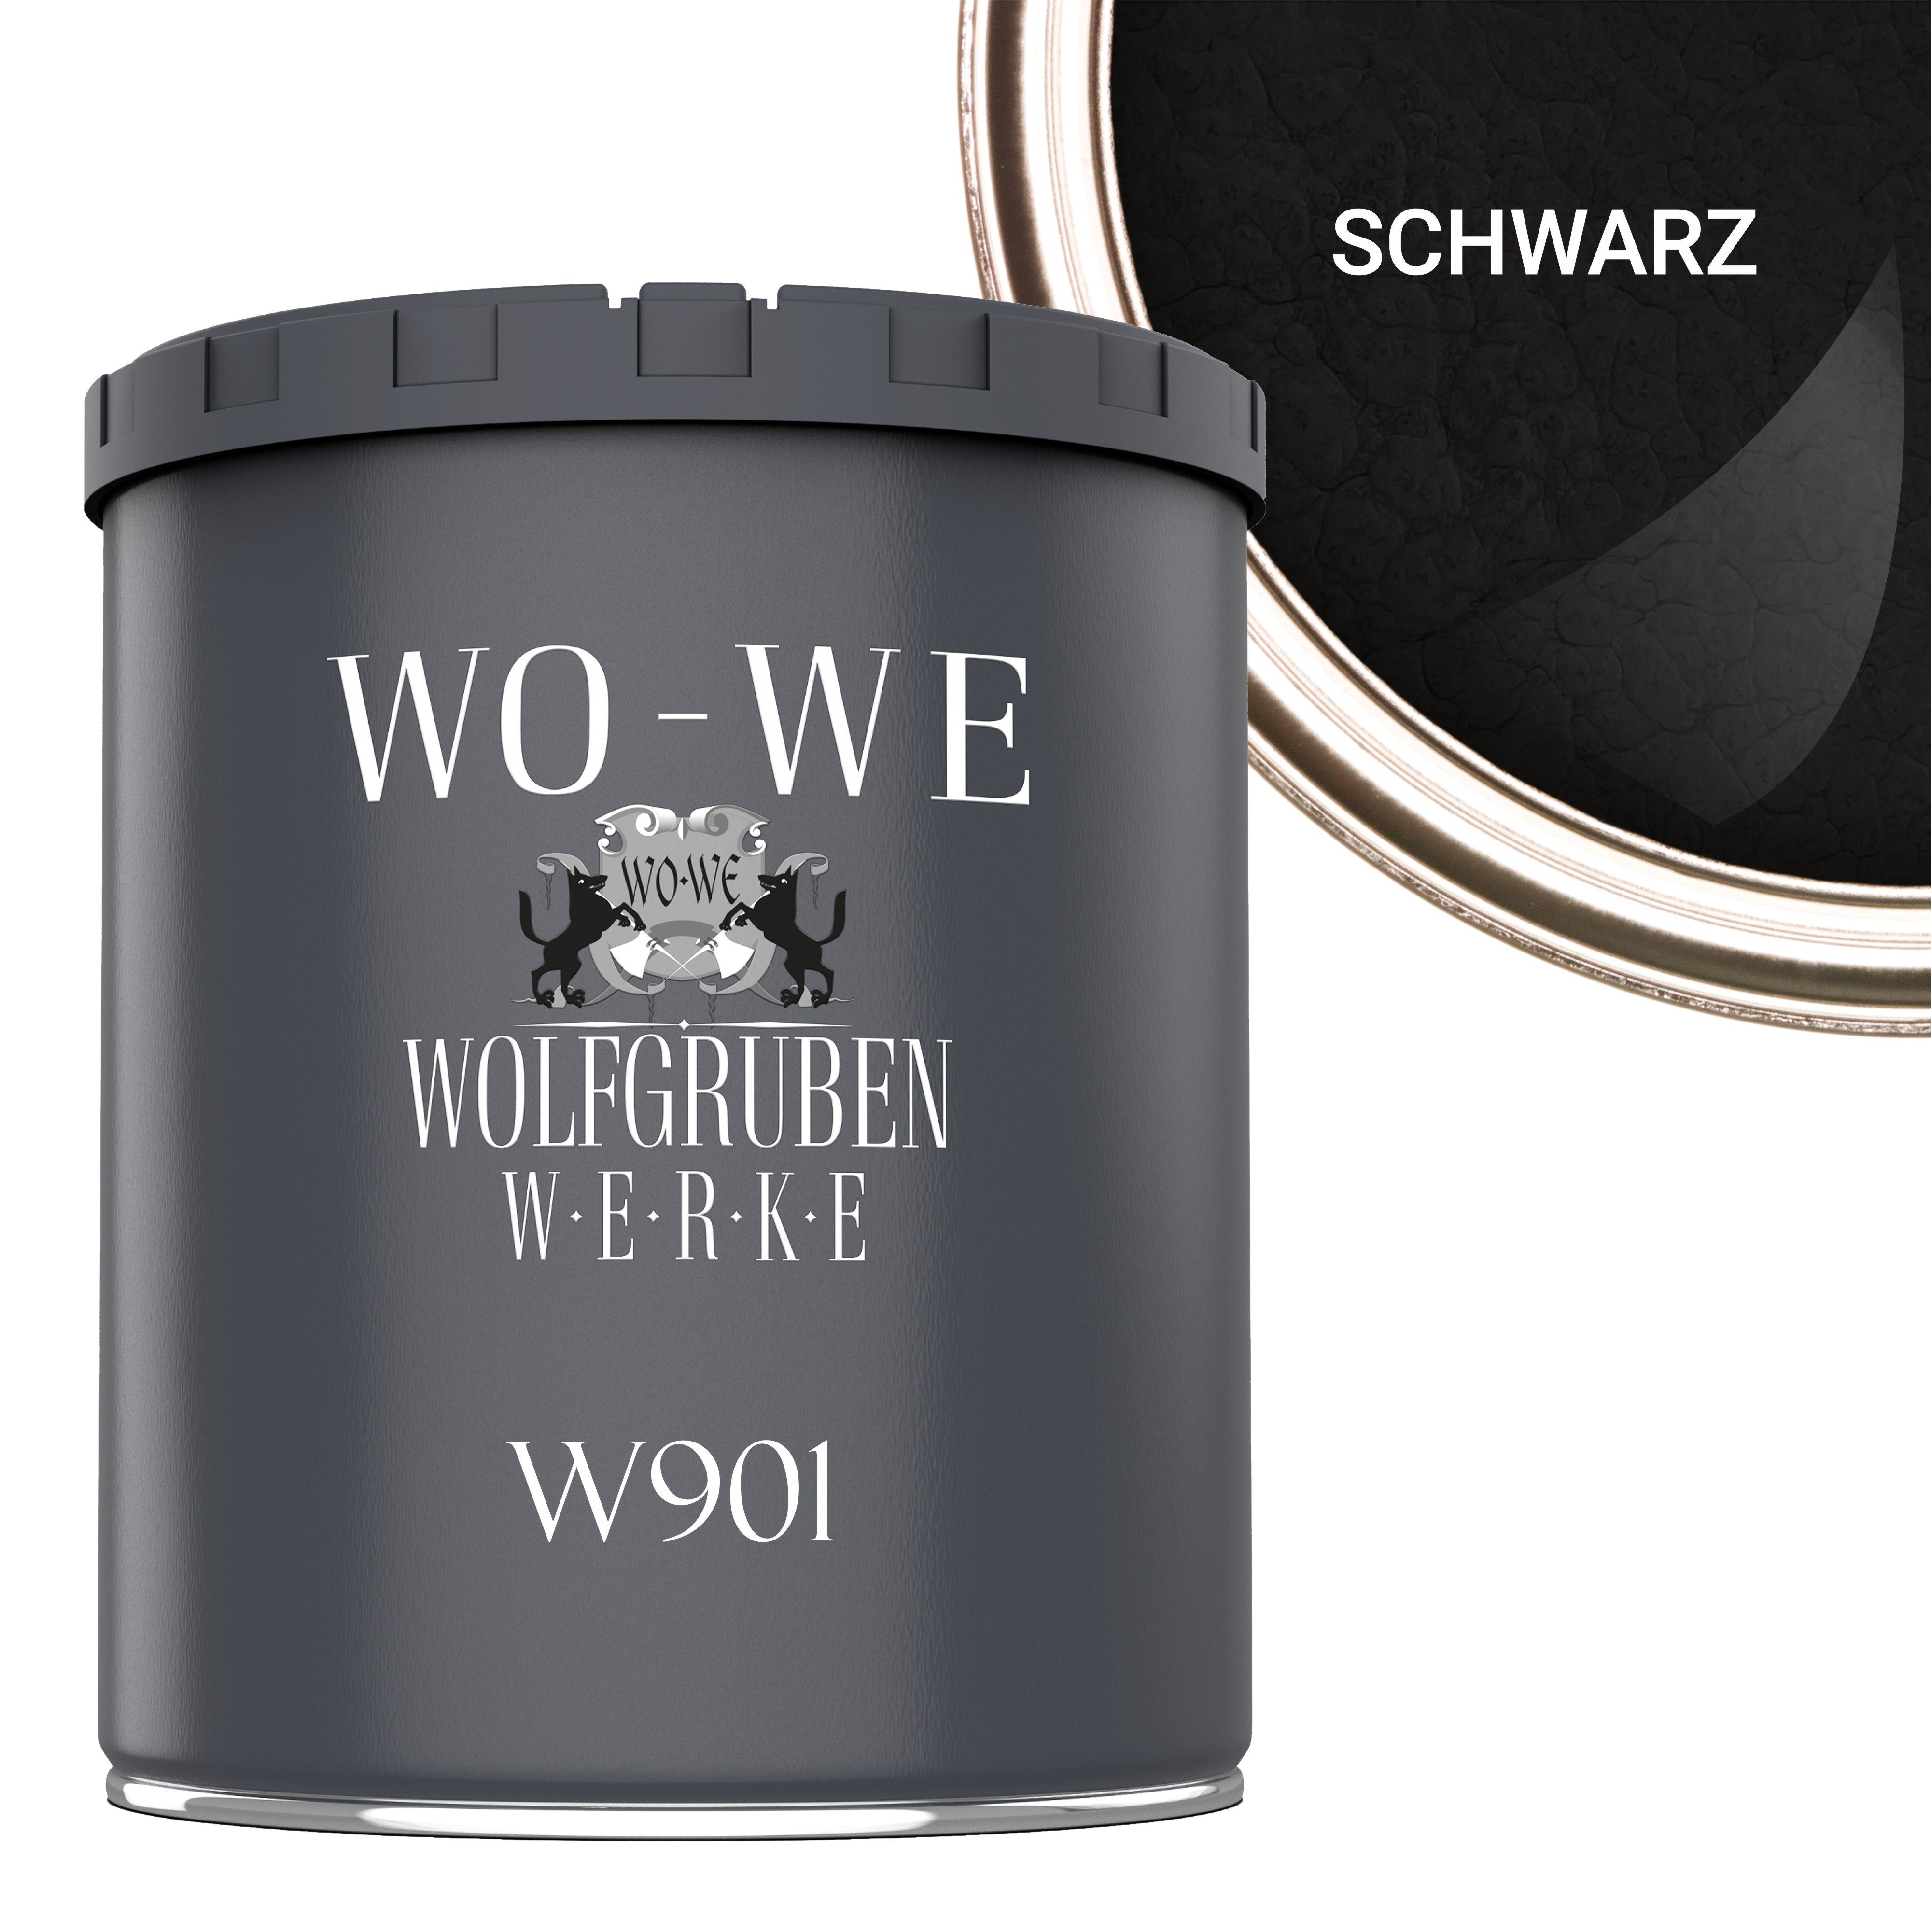 WO-WE Metallschutzlack Hammerschlaglack Hammerschlag Effektlack W901, 1-5L, Glänzend Schwarz